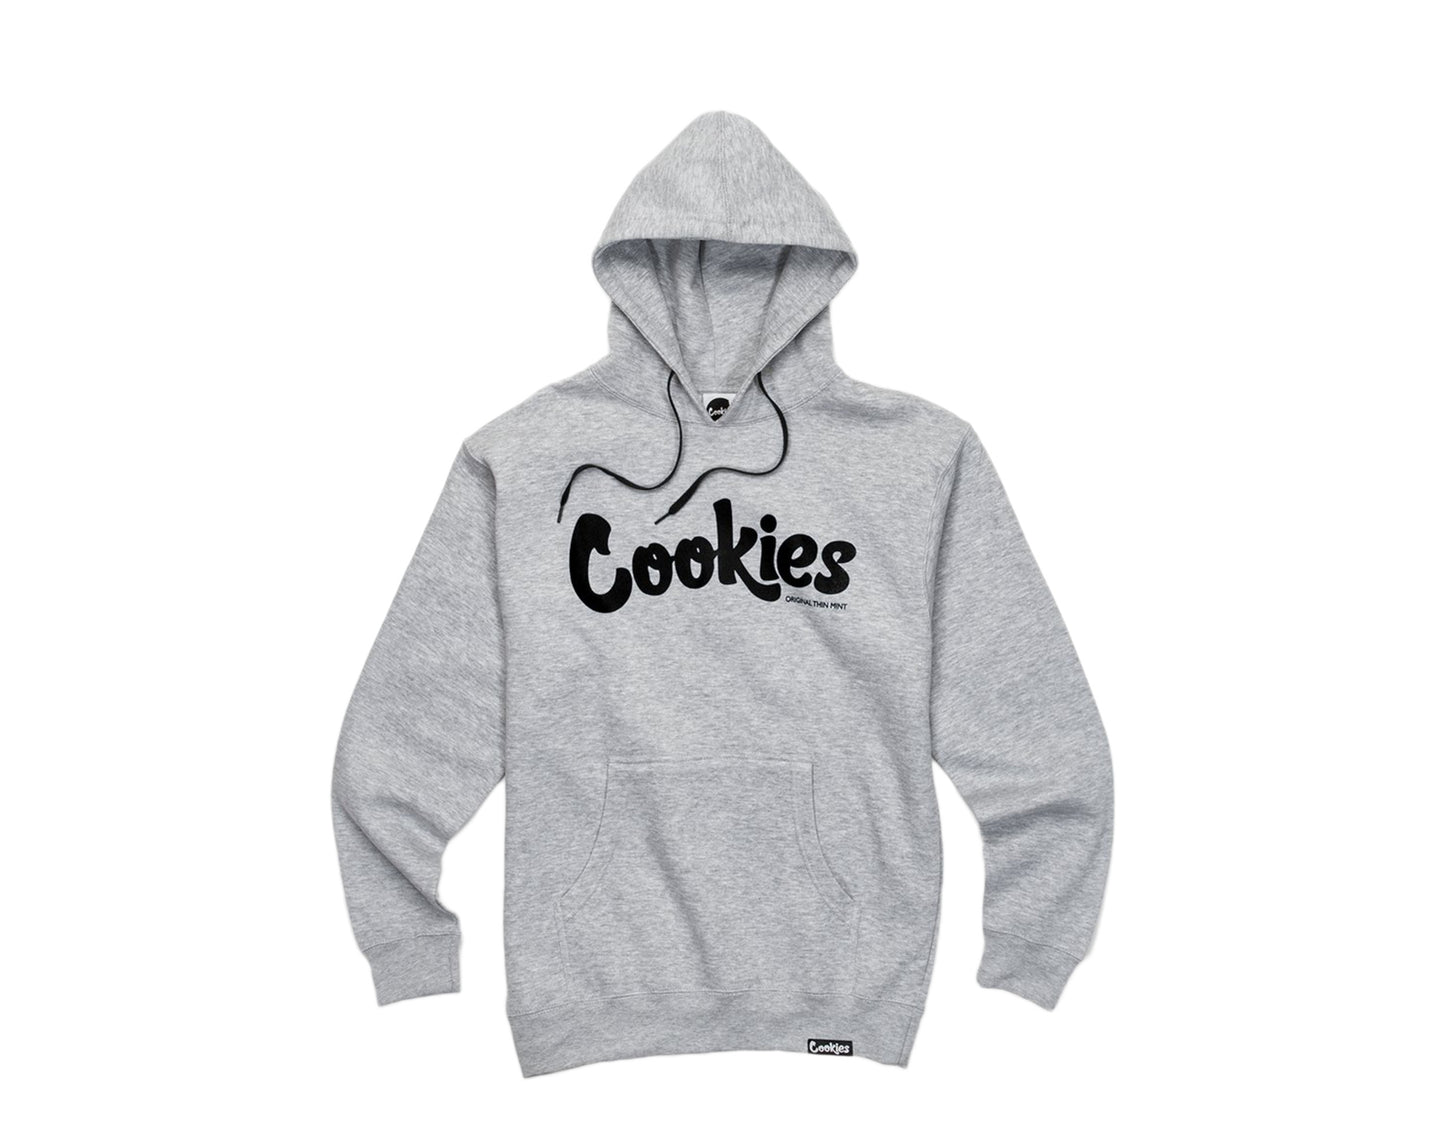 Cookies Original Logo Thin Mint Fleece Grey/Black Men's Hoodie 1536H3320-HCB